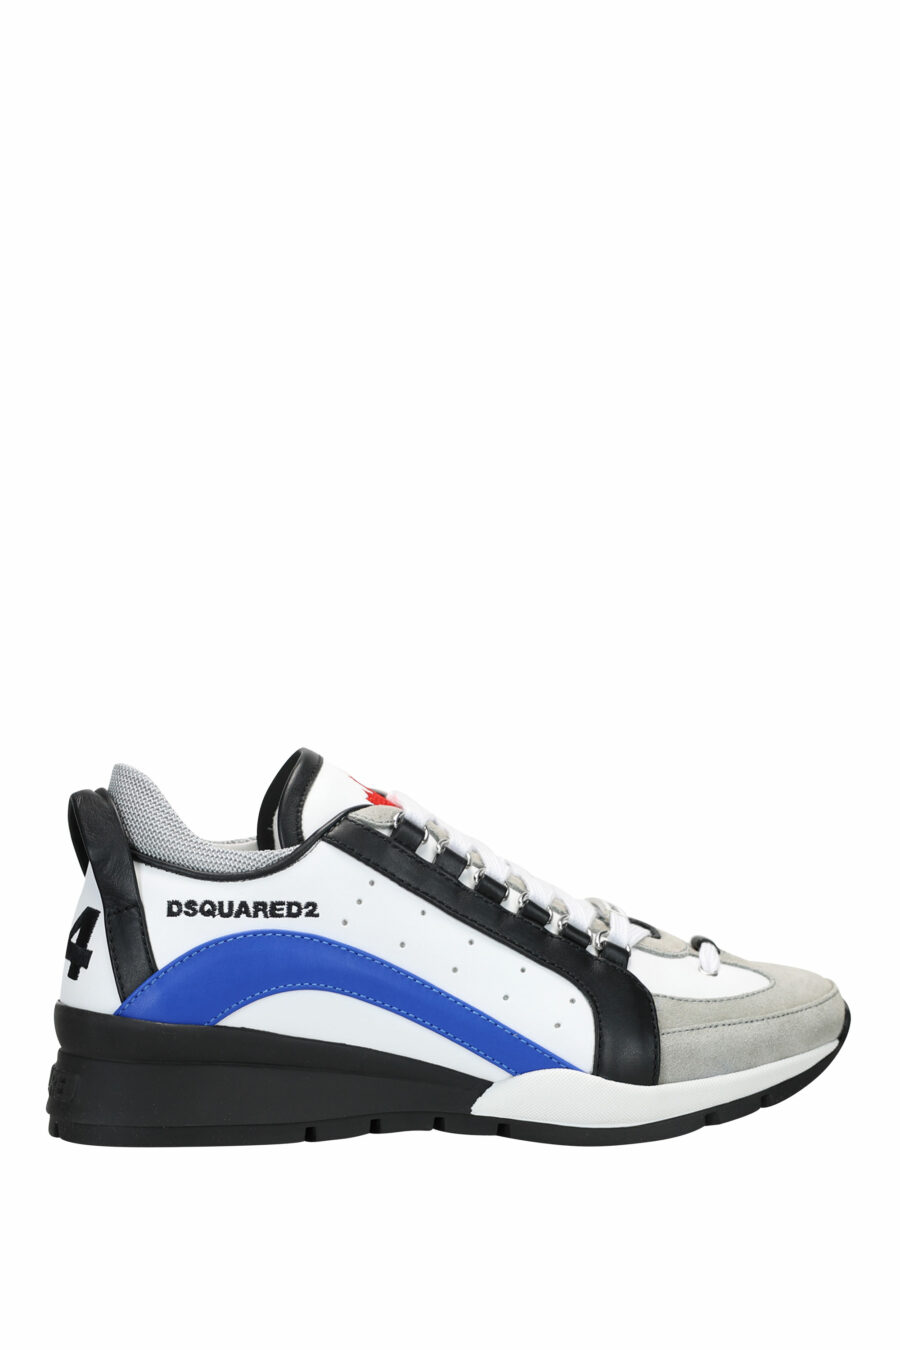 Zapatillas blancas con negro y azul y minilogo - 8055777243701